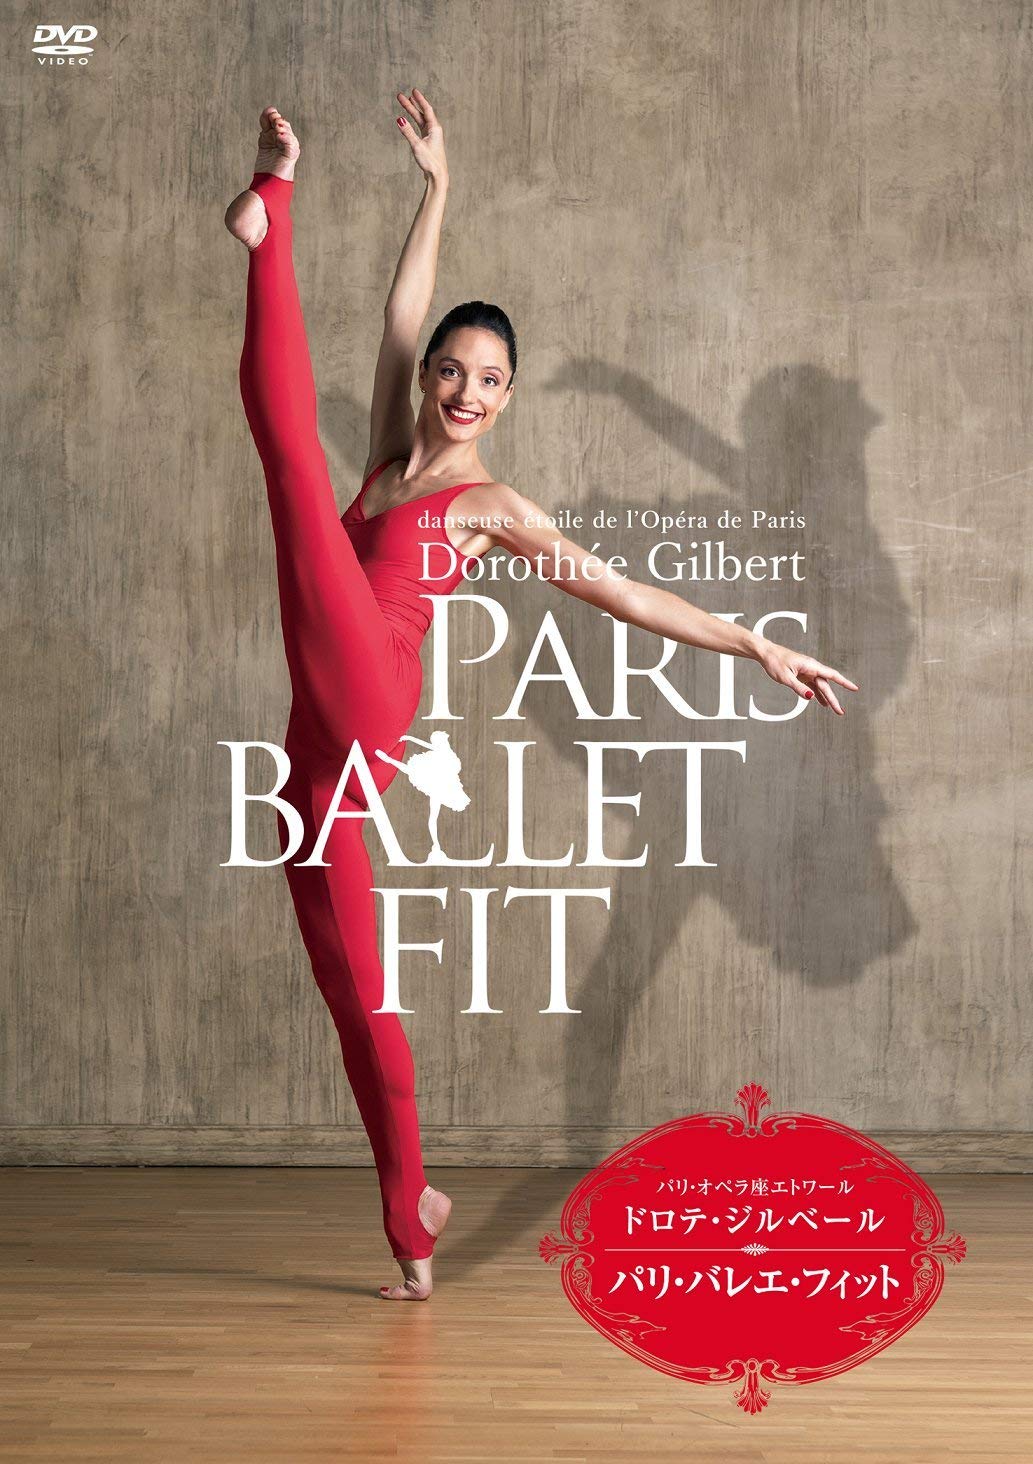 パリ・オペラ座バレエ団エトワール、ドロテ・ジルベールさんプロデュース「ドロテ・ジルベール パリ・バレエ・フィット」、DVDが2018年7月25日発売  | バレエニュースダイジェスト